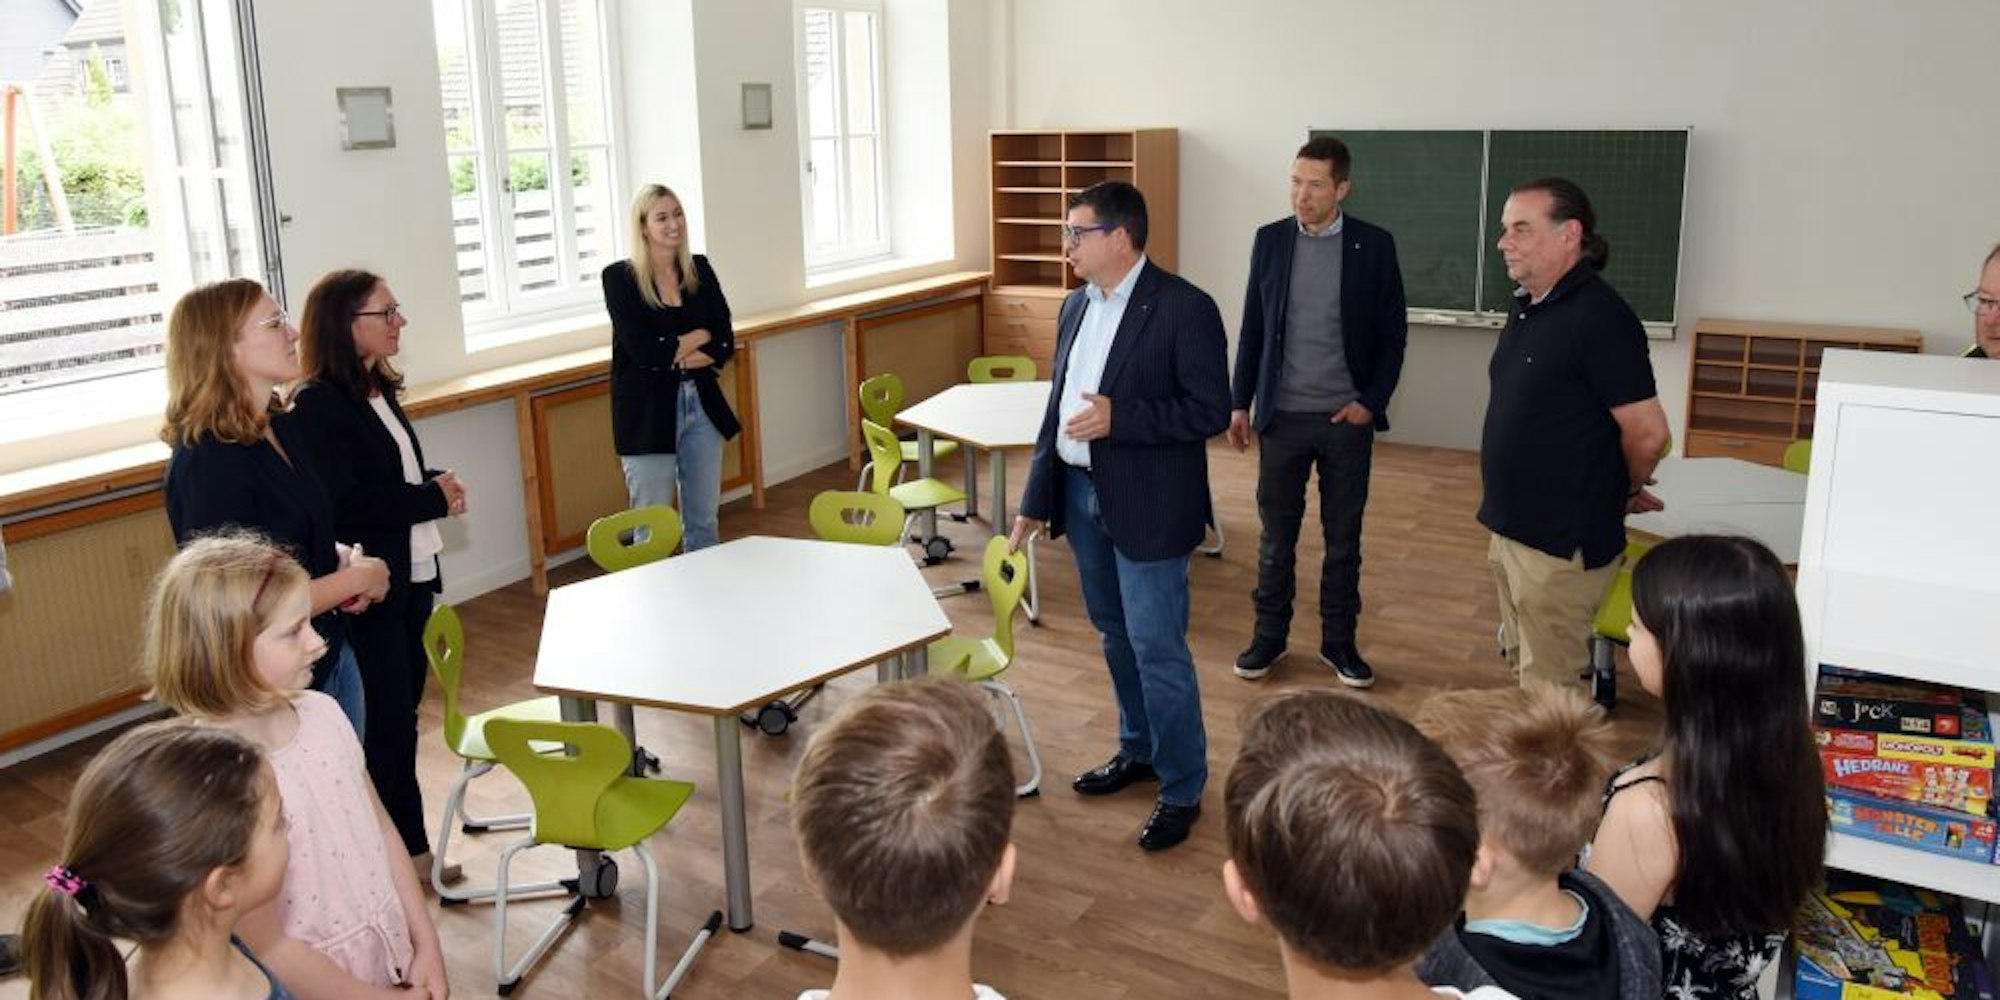 In die ehemaligen Klassenräume ist jetzt die OGS in Niederseßmar eingezogen.